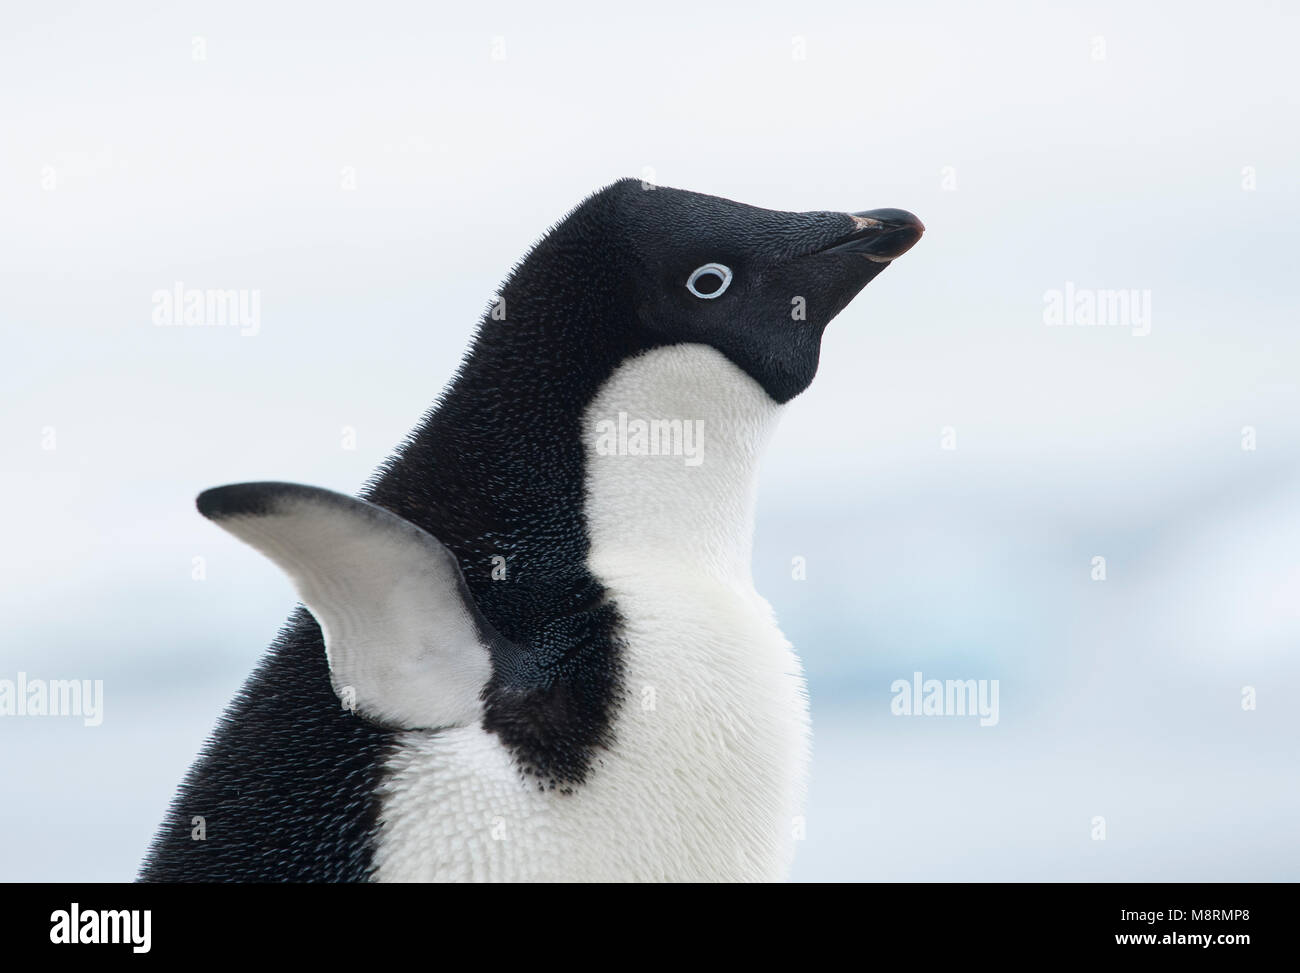 Un pingüino Adelia extiende sus alas en la Antártida. Foto de stock